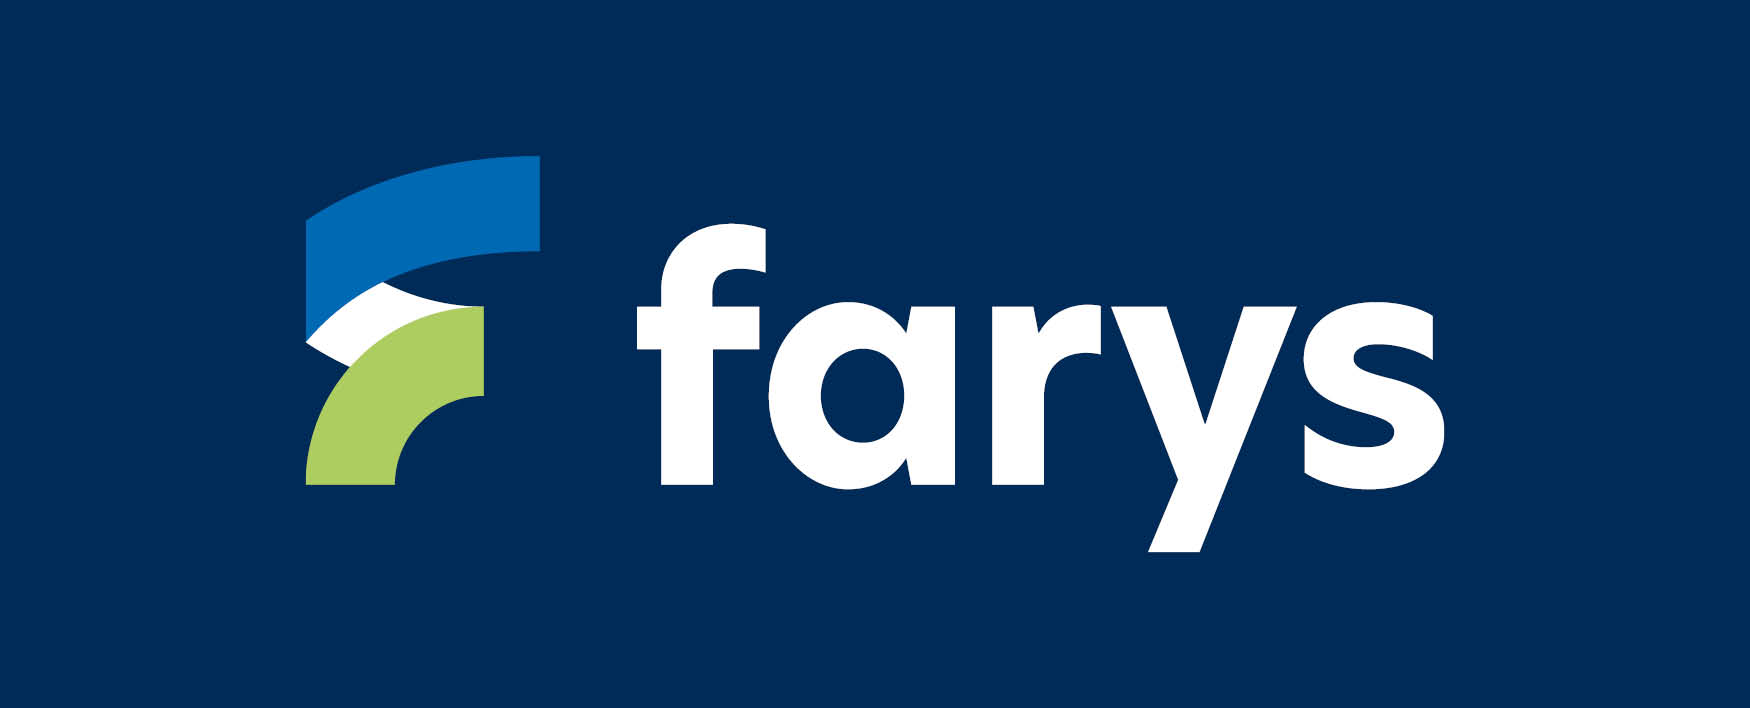 Home | Farys